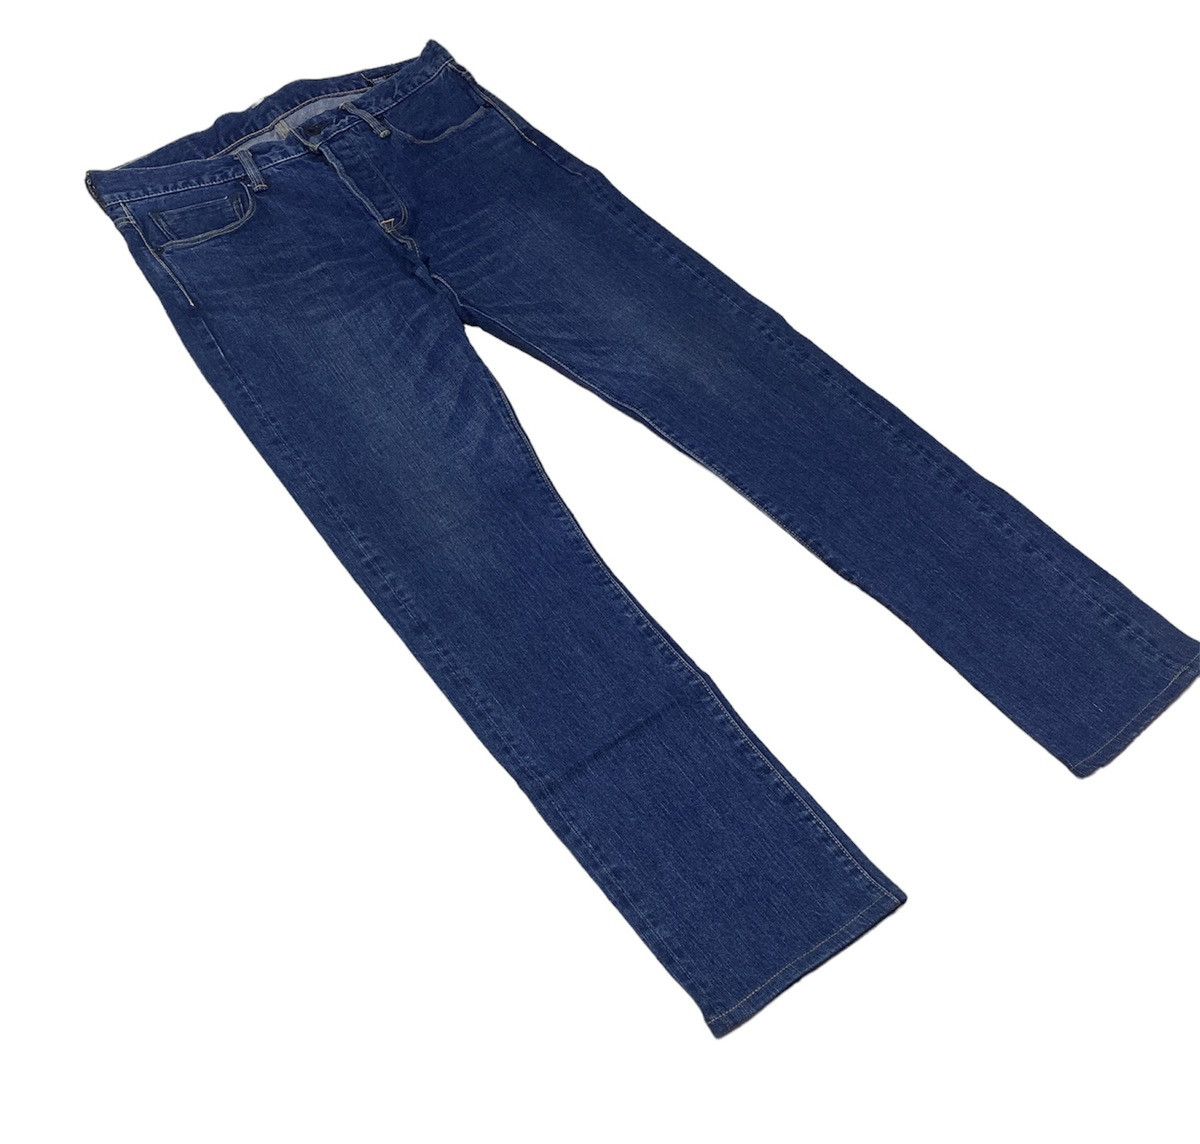 KURO Diamante Japanese Selvedge Denim Jeans - 3